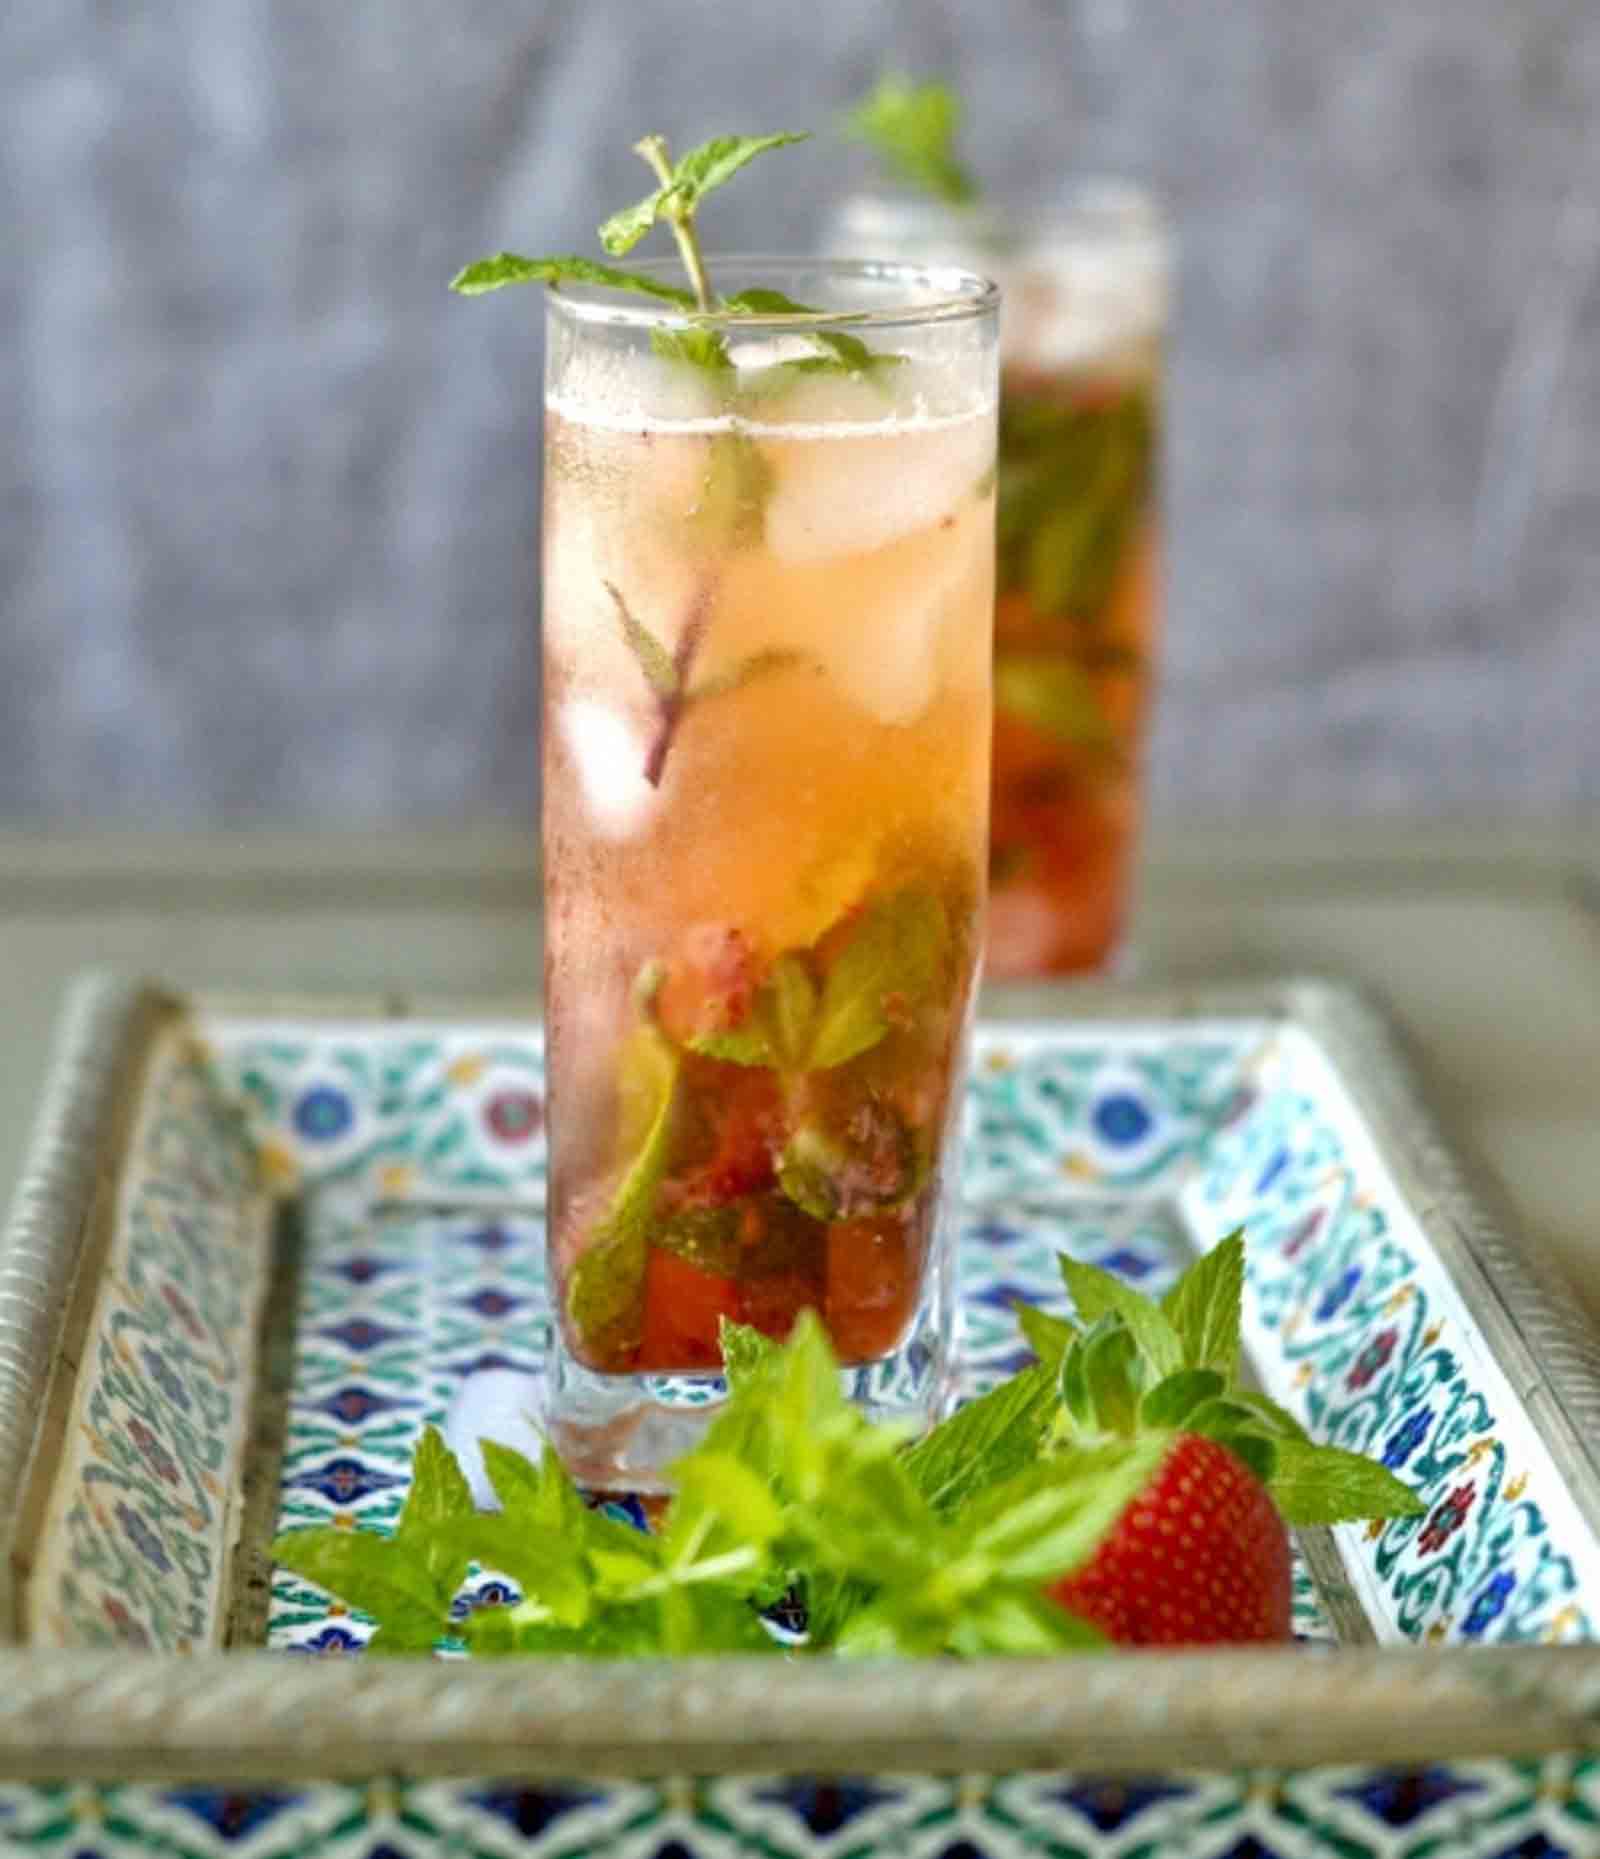 Strawberry Mojito Recipe